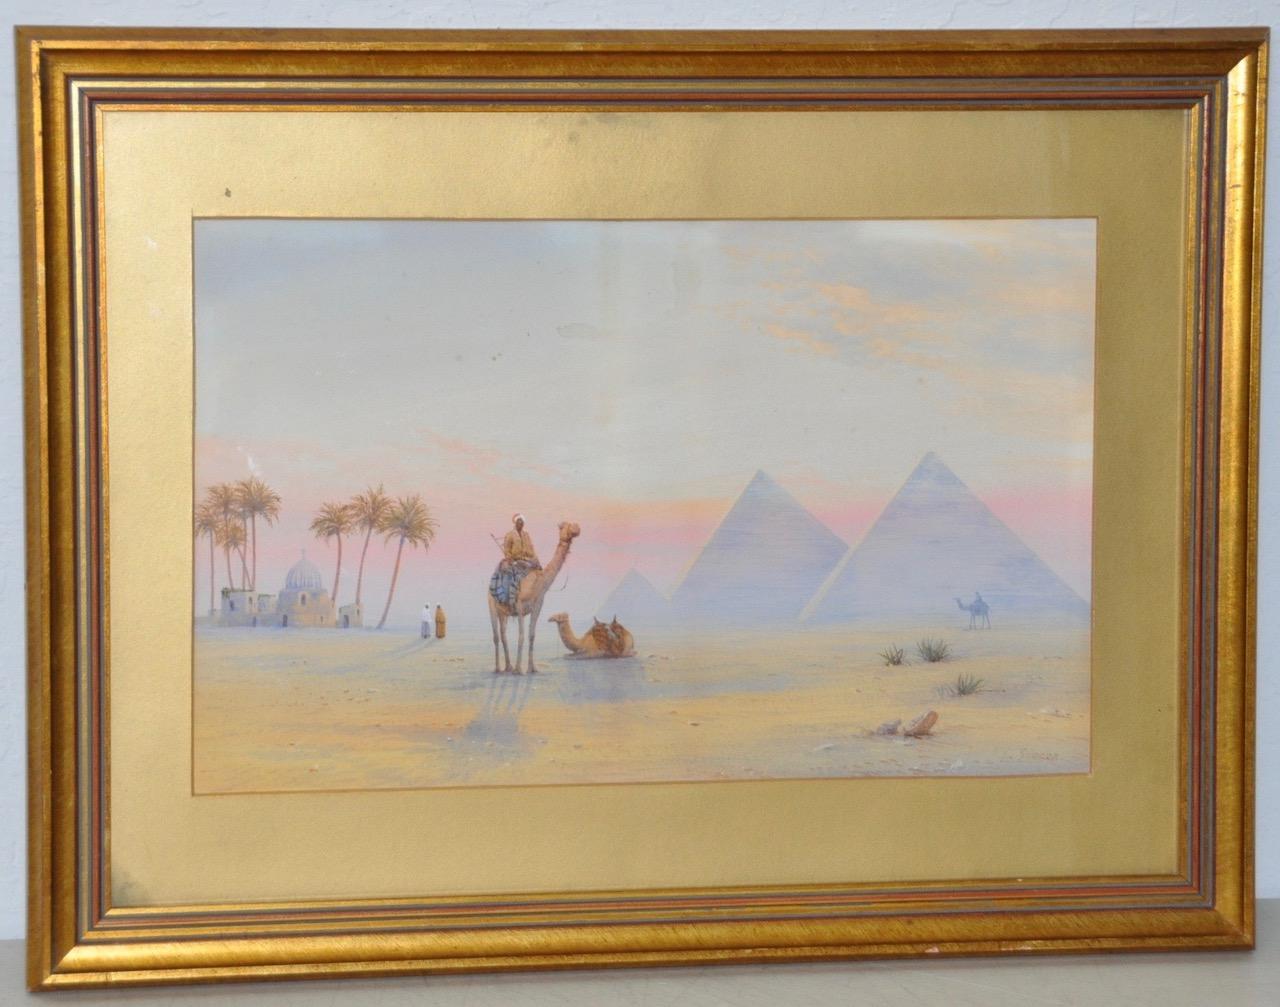 Unknown Landscape Art - 19th Century Watercolor Pyramids at Giza